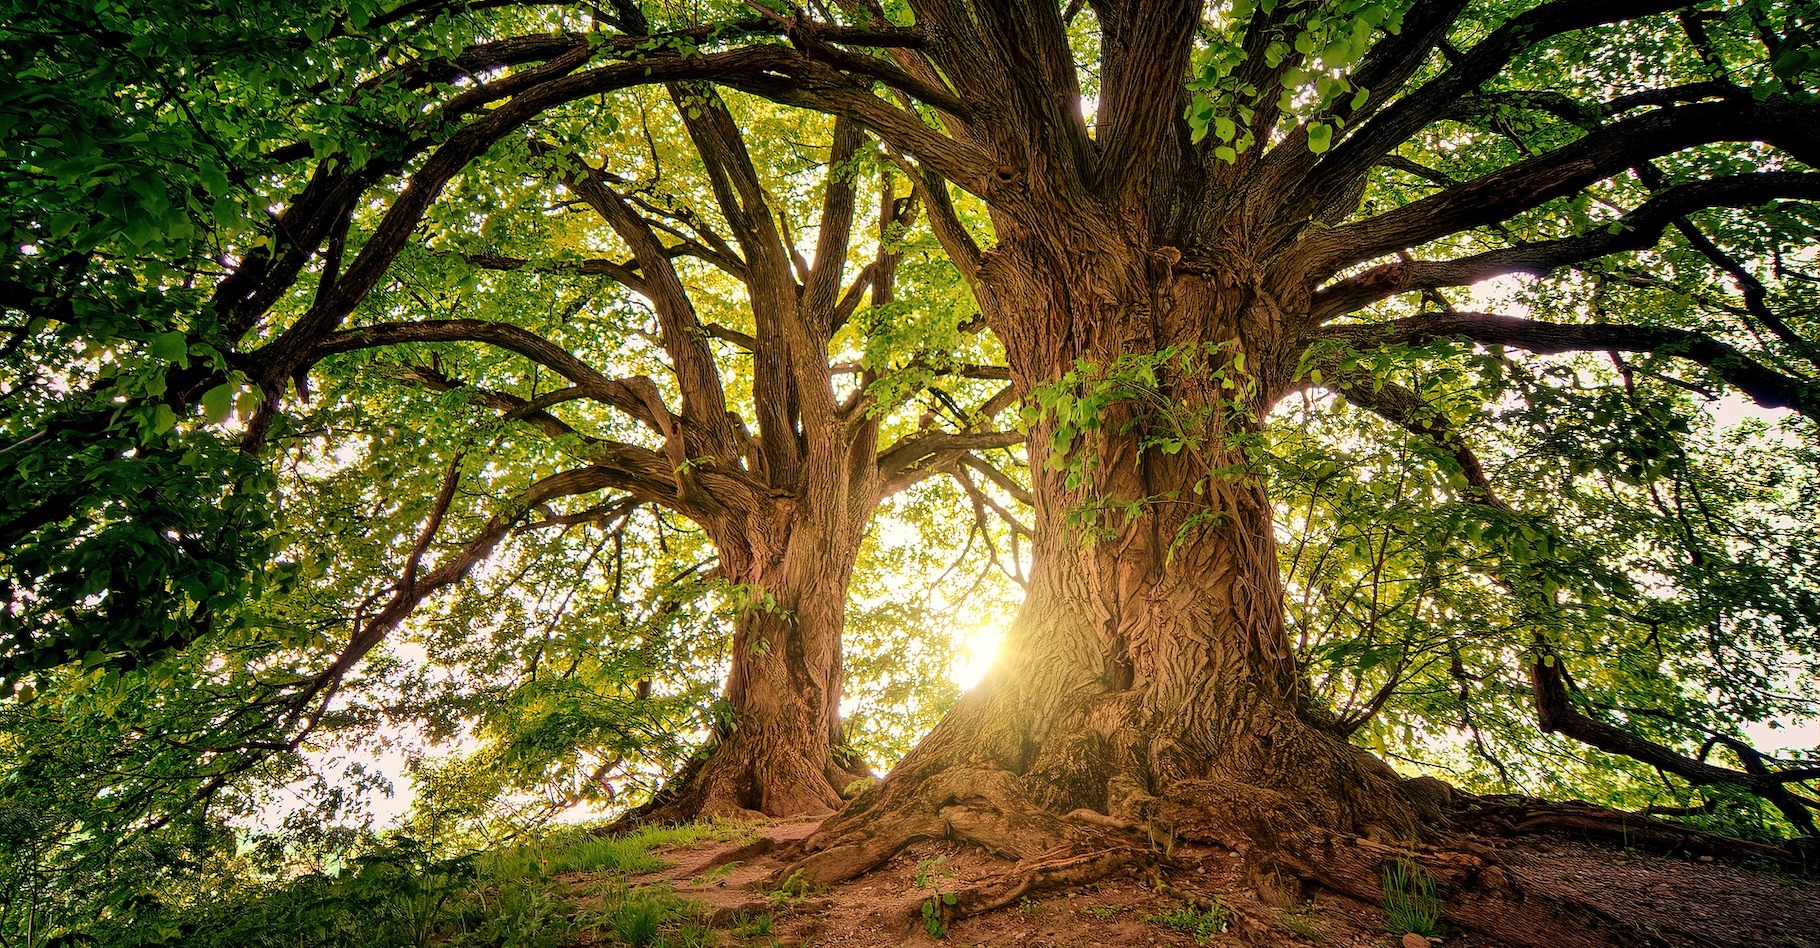 Les arbres stockent le CO2 et aident ainsi à lutter contre le réchauffement climatique. Mais, l’équation pourrait ne pas être aussi simple. © jplenio, Pixabay, CC0 Creative Commons